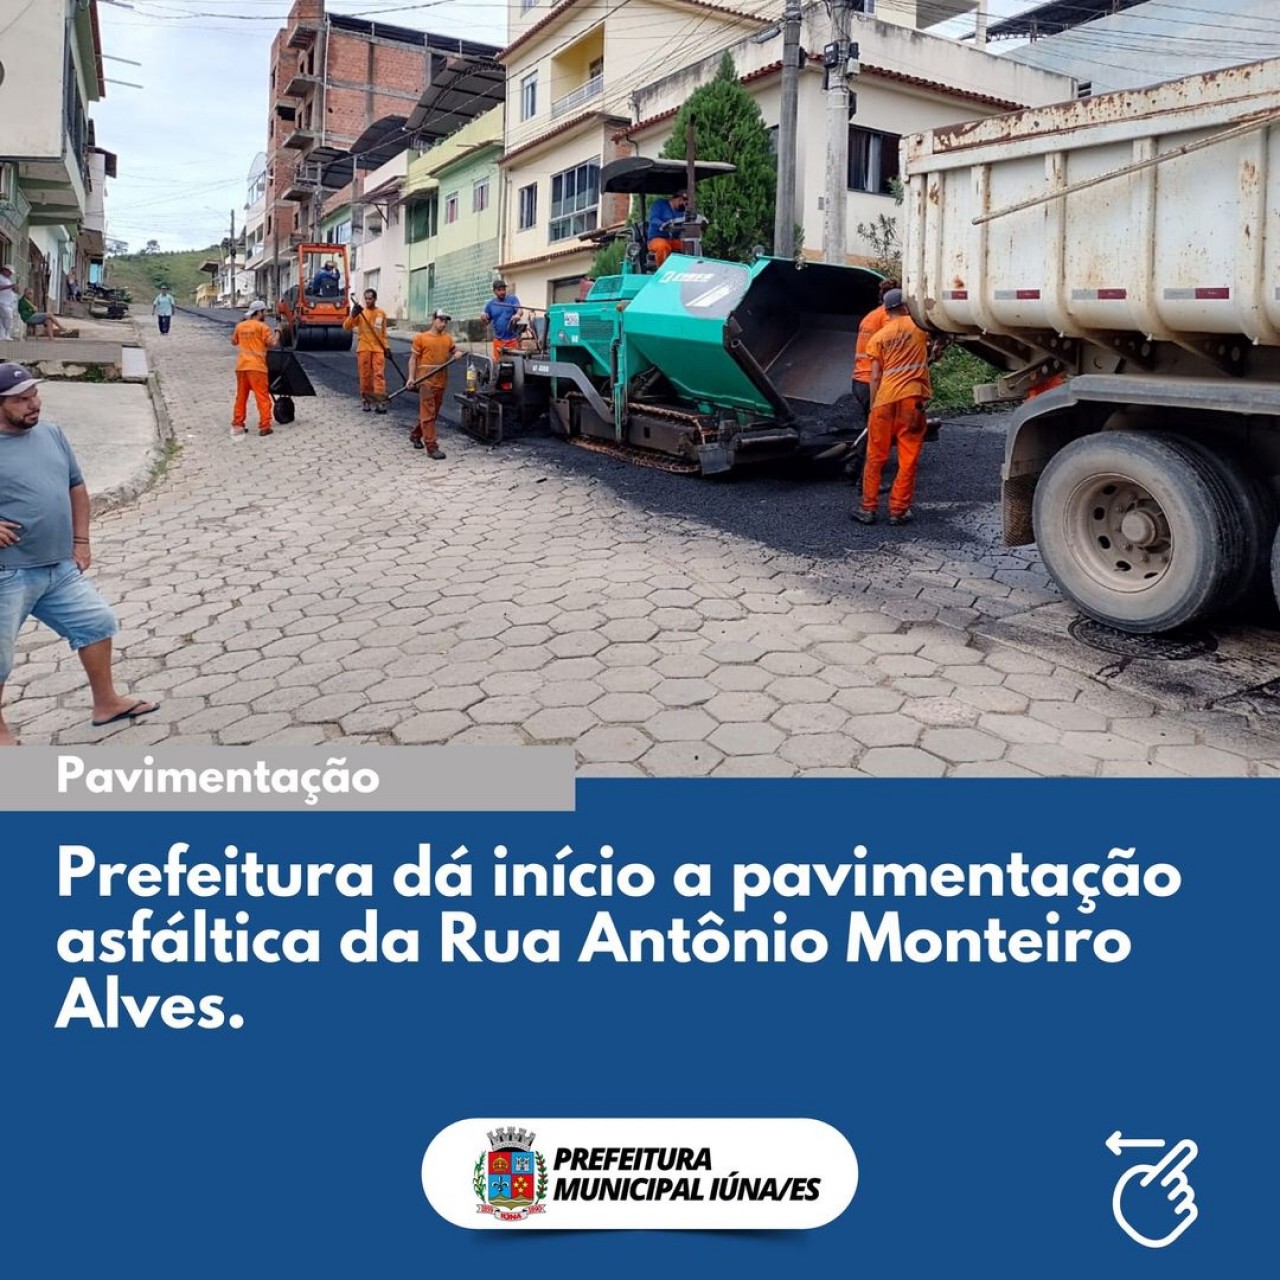 OBRA 86 - pavimentação asfáltica da rua Antônio Monteiro Alves